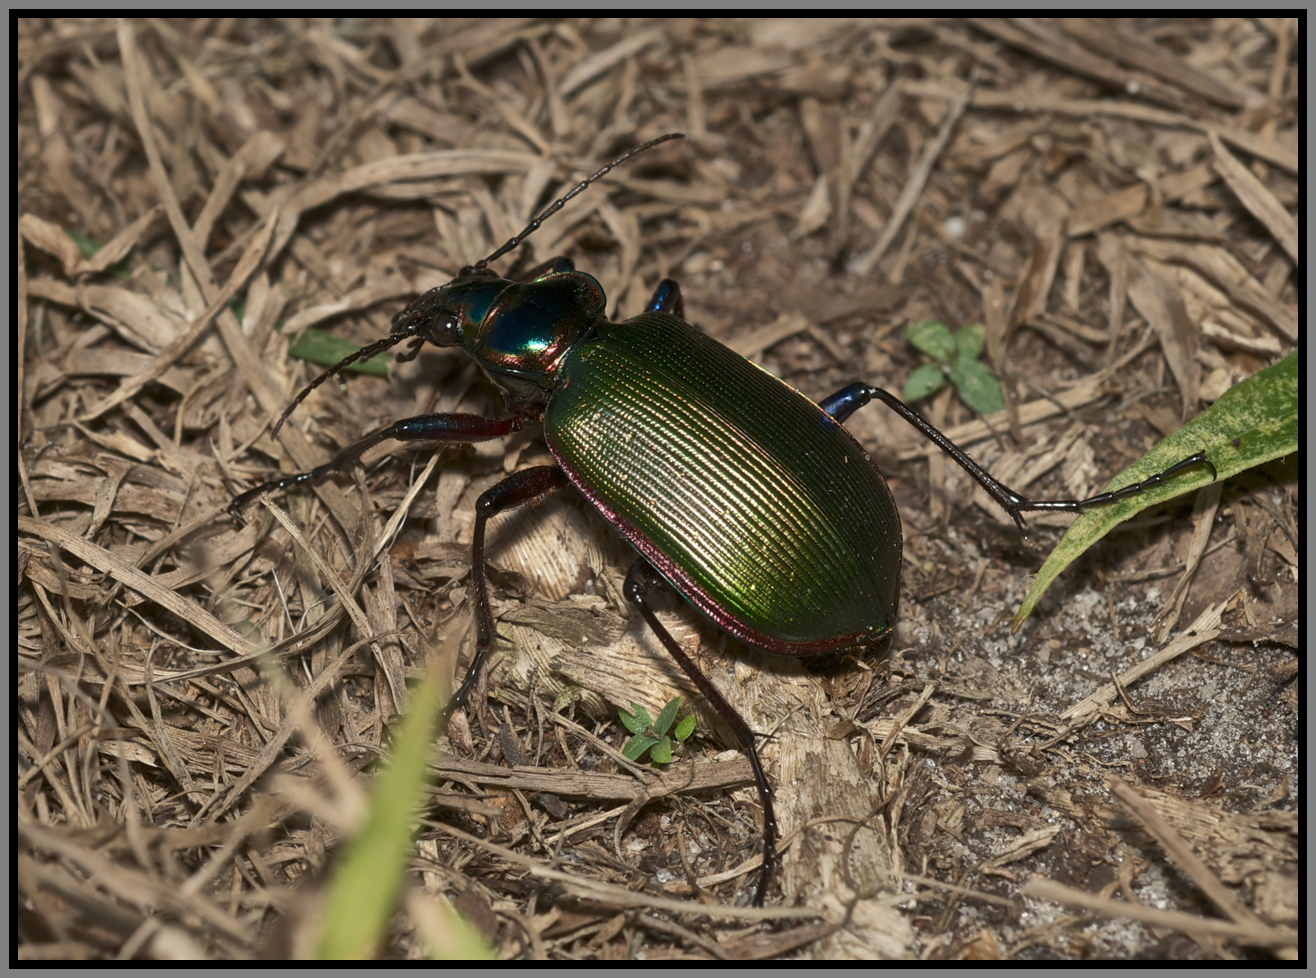 Carabidae Beetle - Fiery Searcher (Calosoma scrutator)